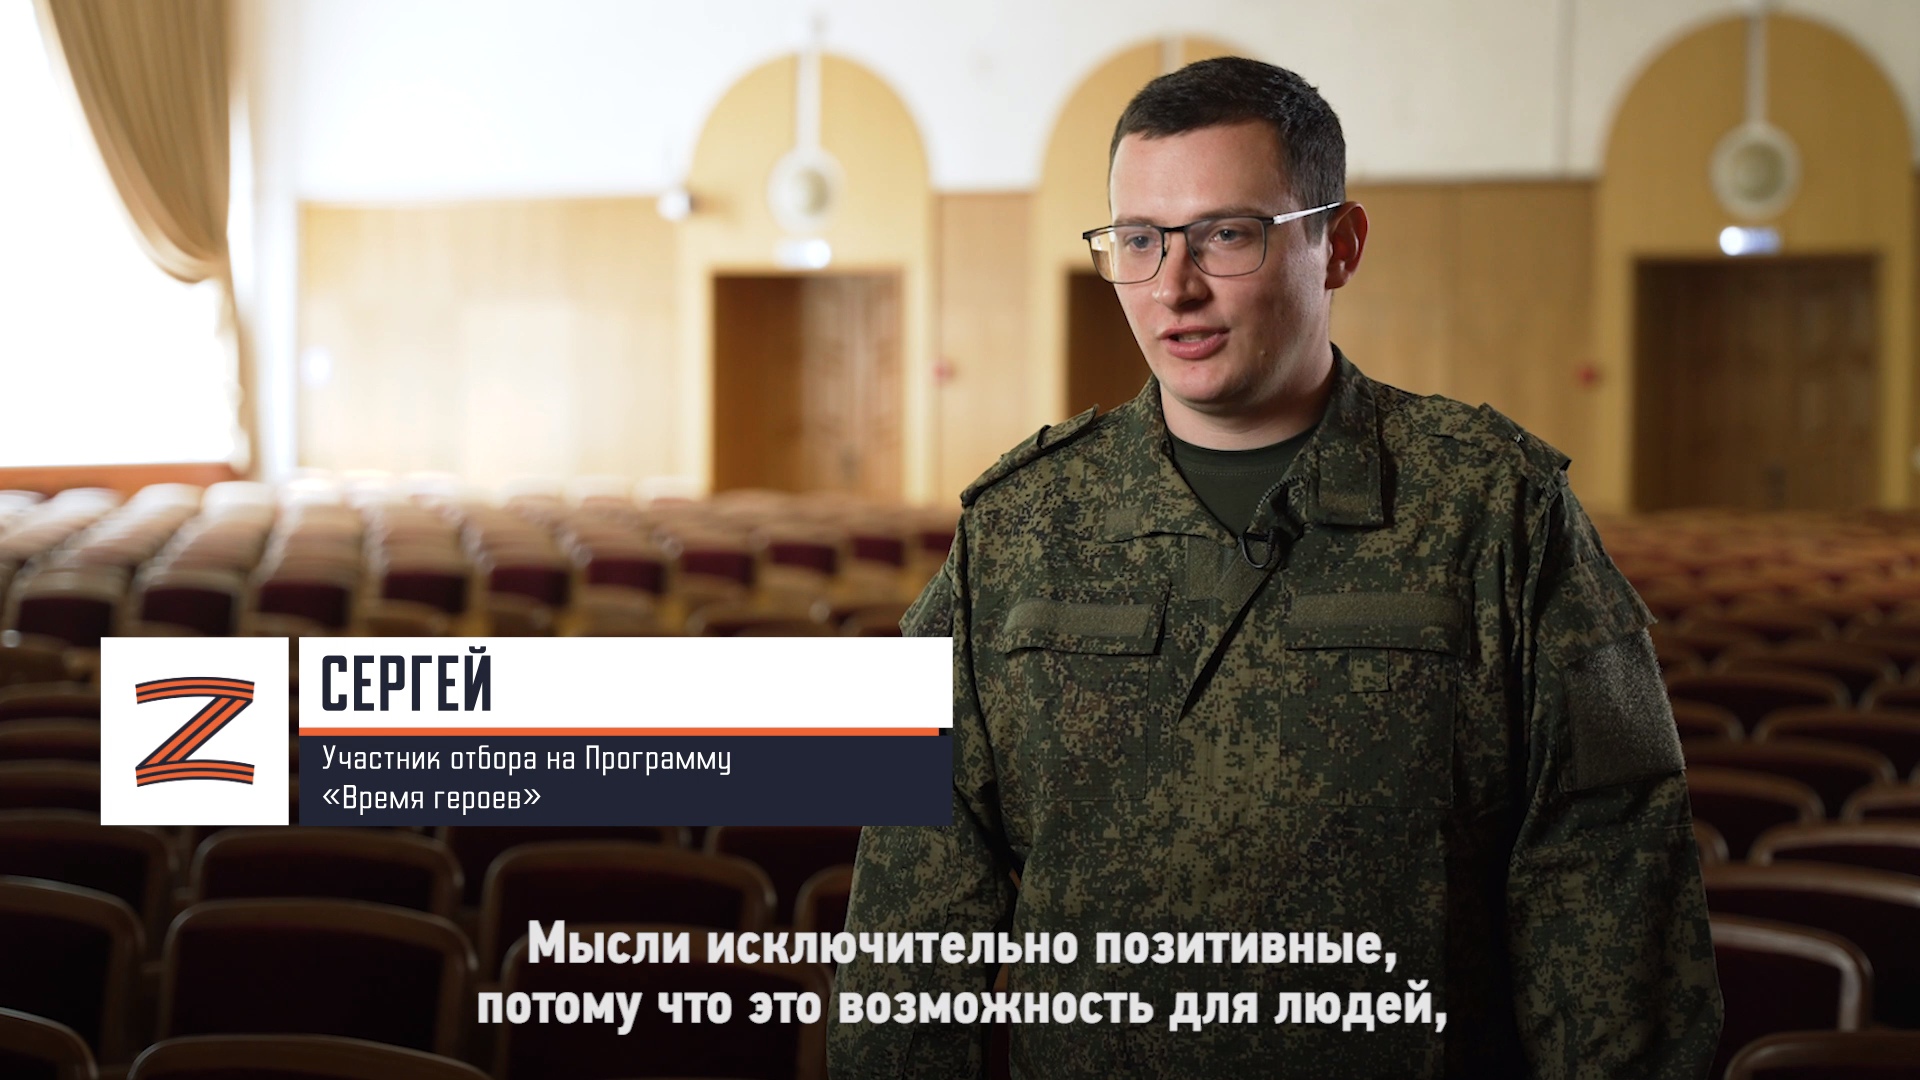 Участник отбора на Программу «Время героев» Сергей о своём участии в Программе